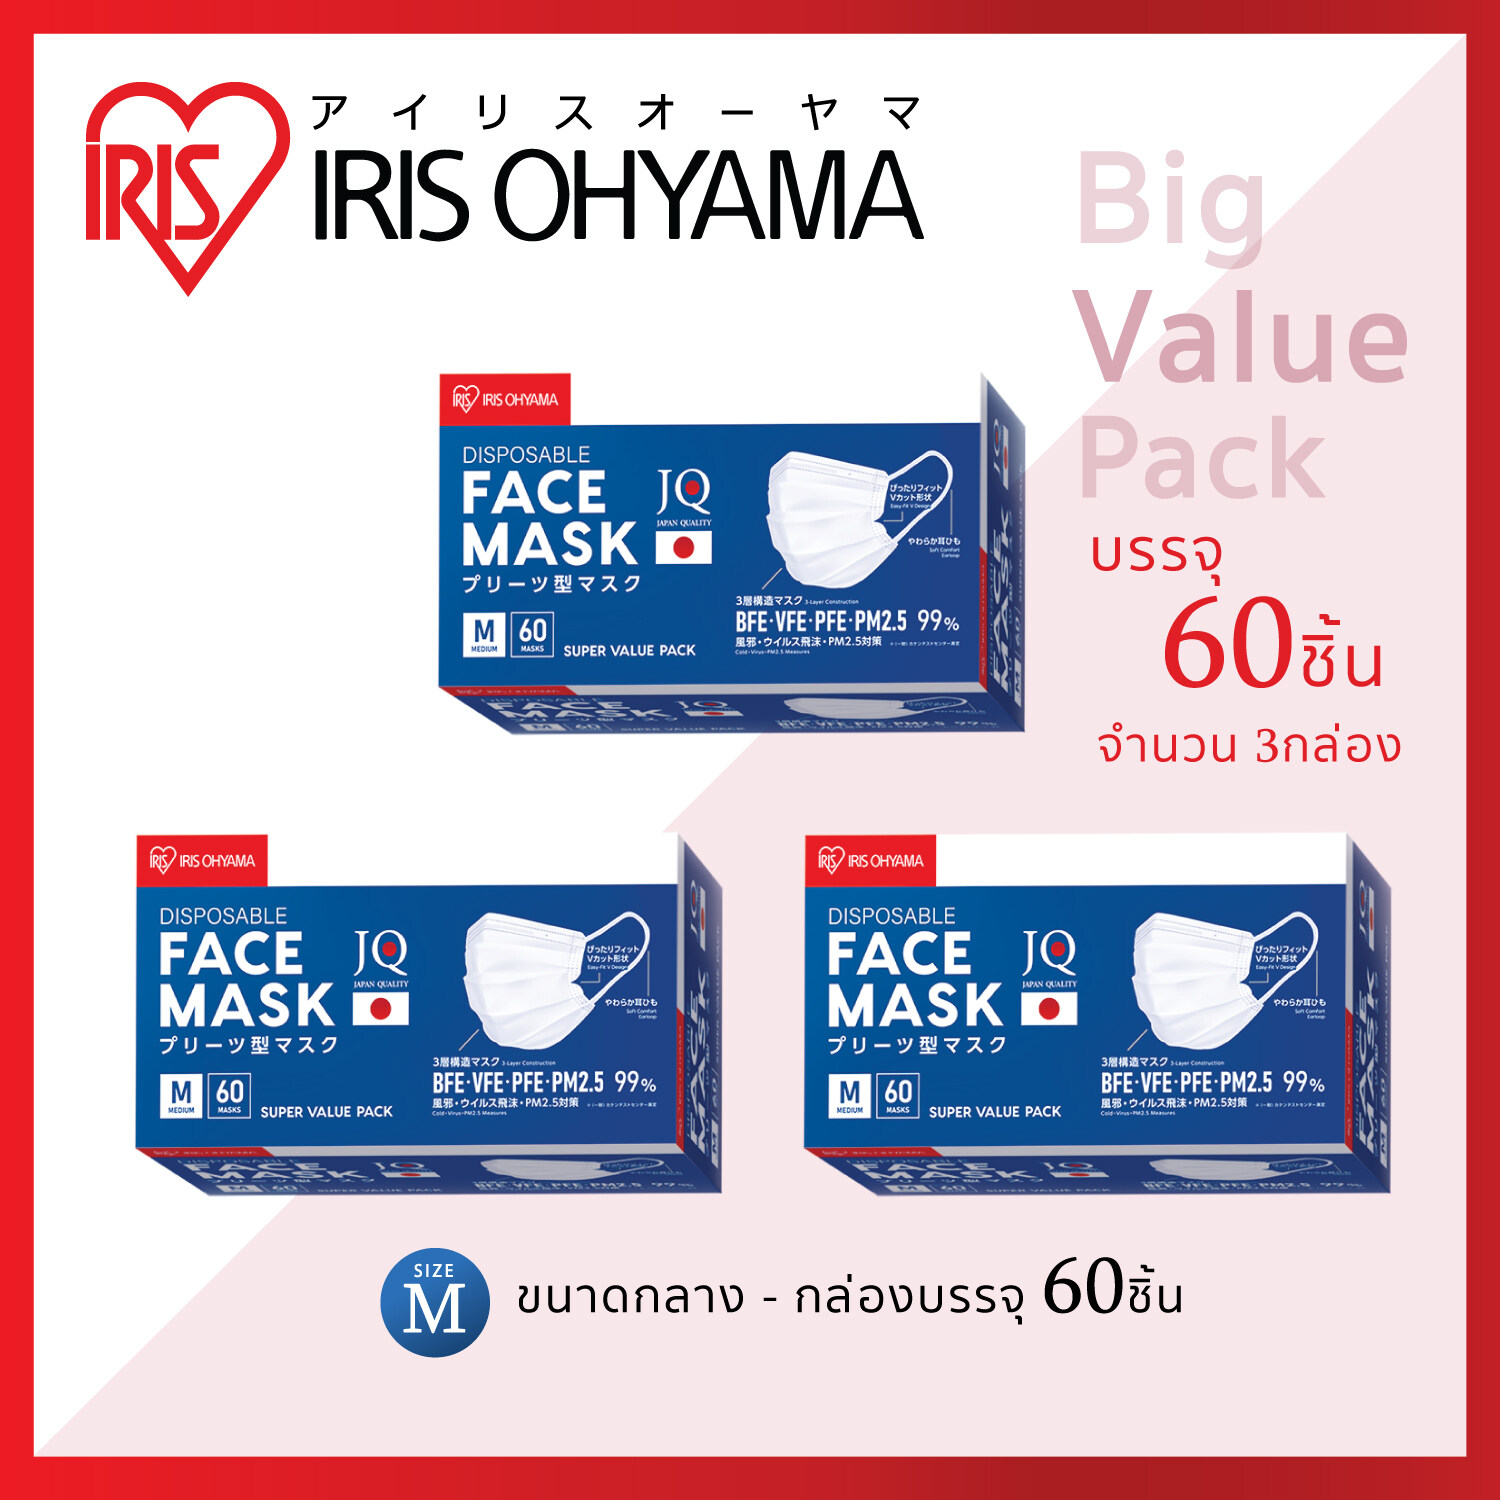 หน้ากากอนามัย ไอริส โอยามะ IRIS OHYAMA ป้องกันเชื้อโรค ฝุ่น 2.5 PM พิเศษ แพค 3 กล่อง (Size ผู้ใหญ่ แบบกล่อง 60 ชิ้น 3 กล่อง)